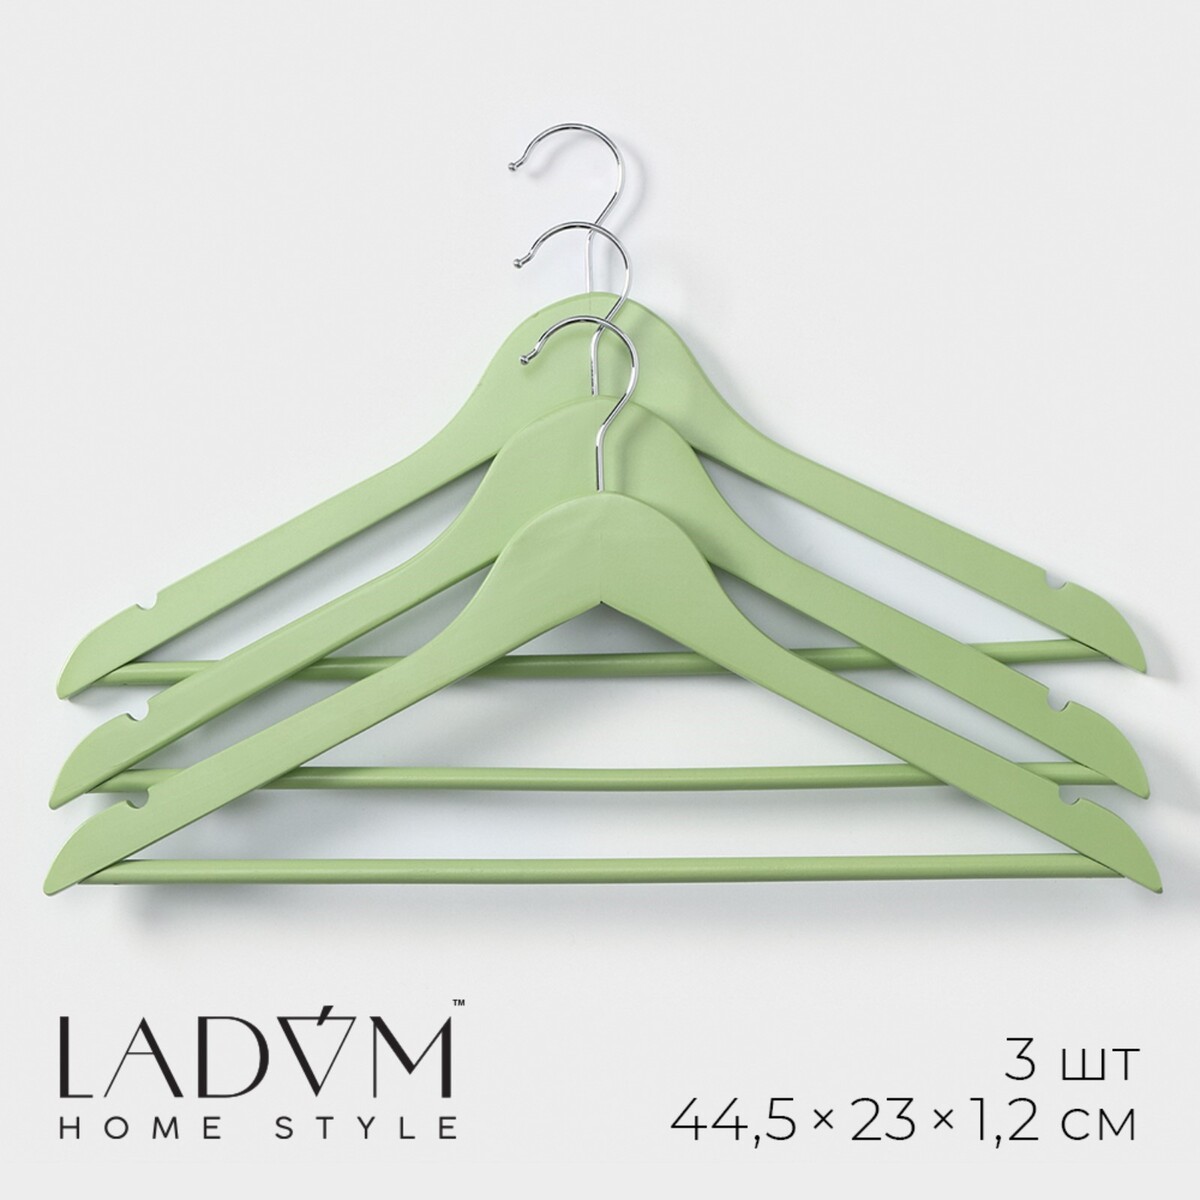 Плечики - вешалки для одежды деревянные ladо́m brillant, 44,5×23×1,2 см, 3 шт, цвет зеленый